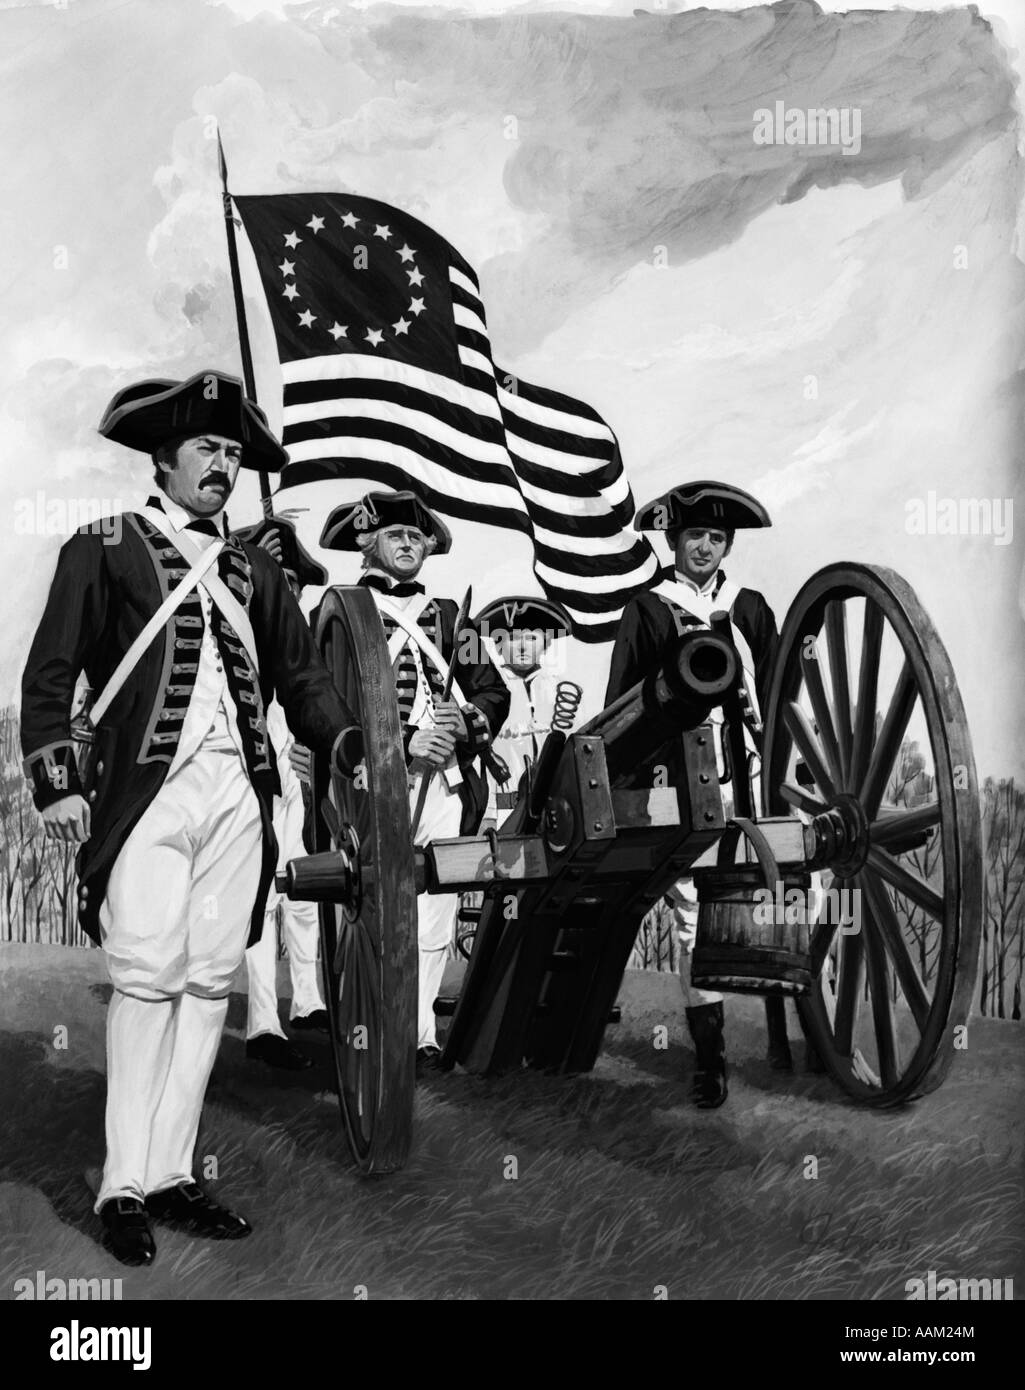 Groupe de quatre soldats de la guerre révolutionnaire hommes debout autour de Canon avec pavillon de treize colonies d'origine 1776 ÉQUIPE DU CANON Banque D'Images